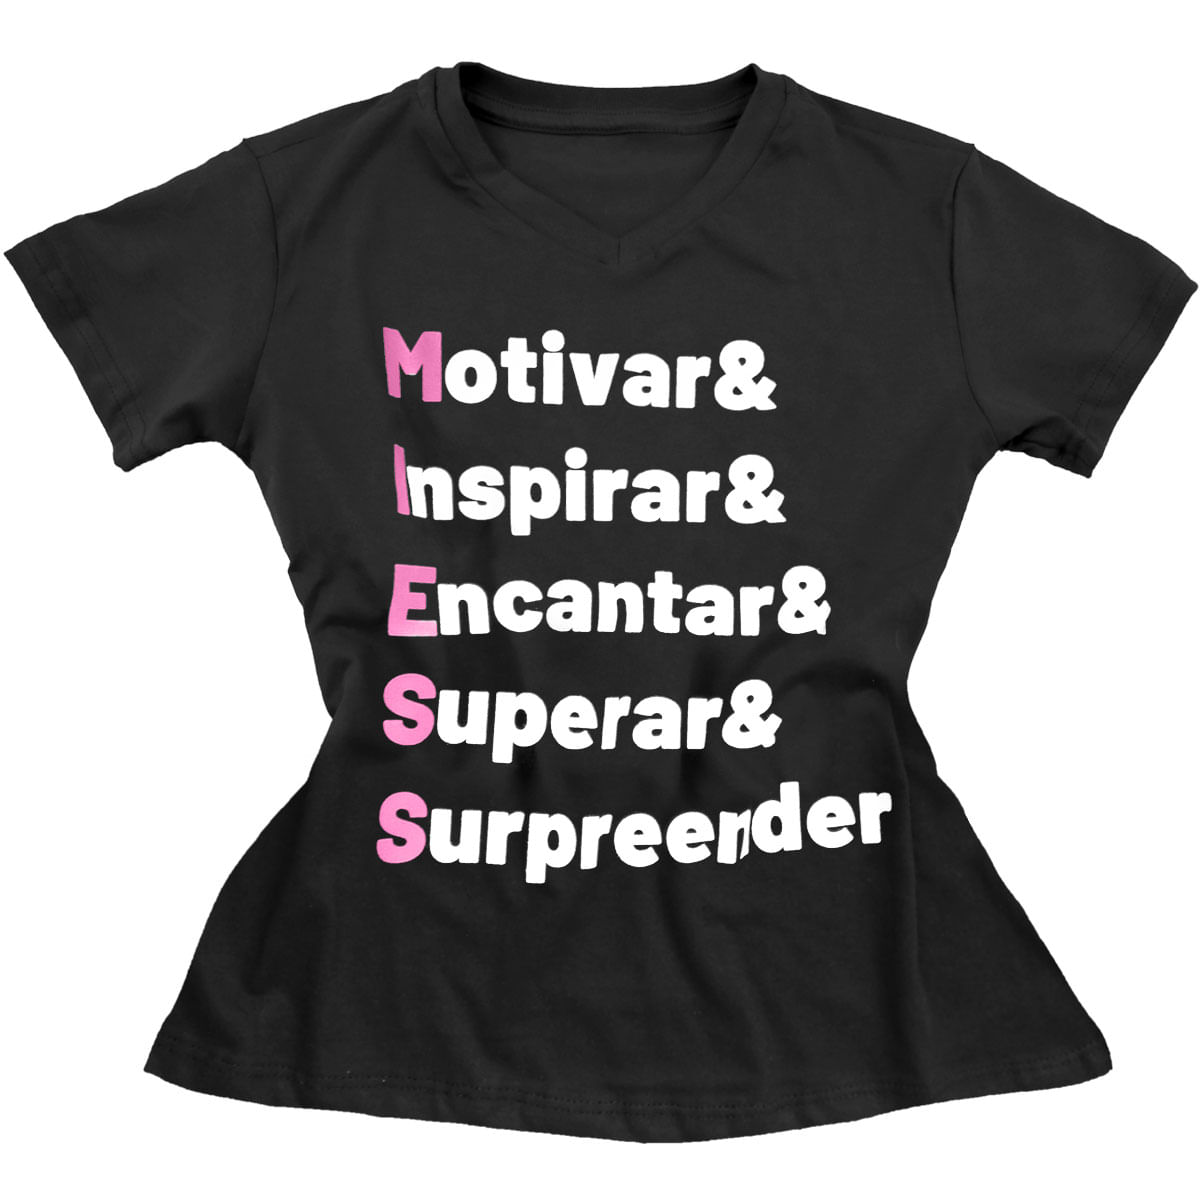 Camiseta Feminina Motivar Inspirar Encantar Superar & Surpreender Miess